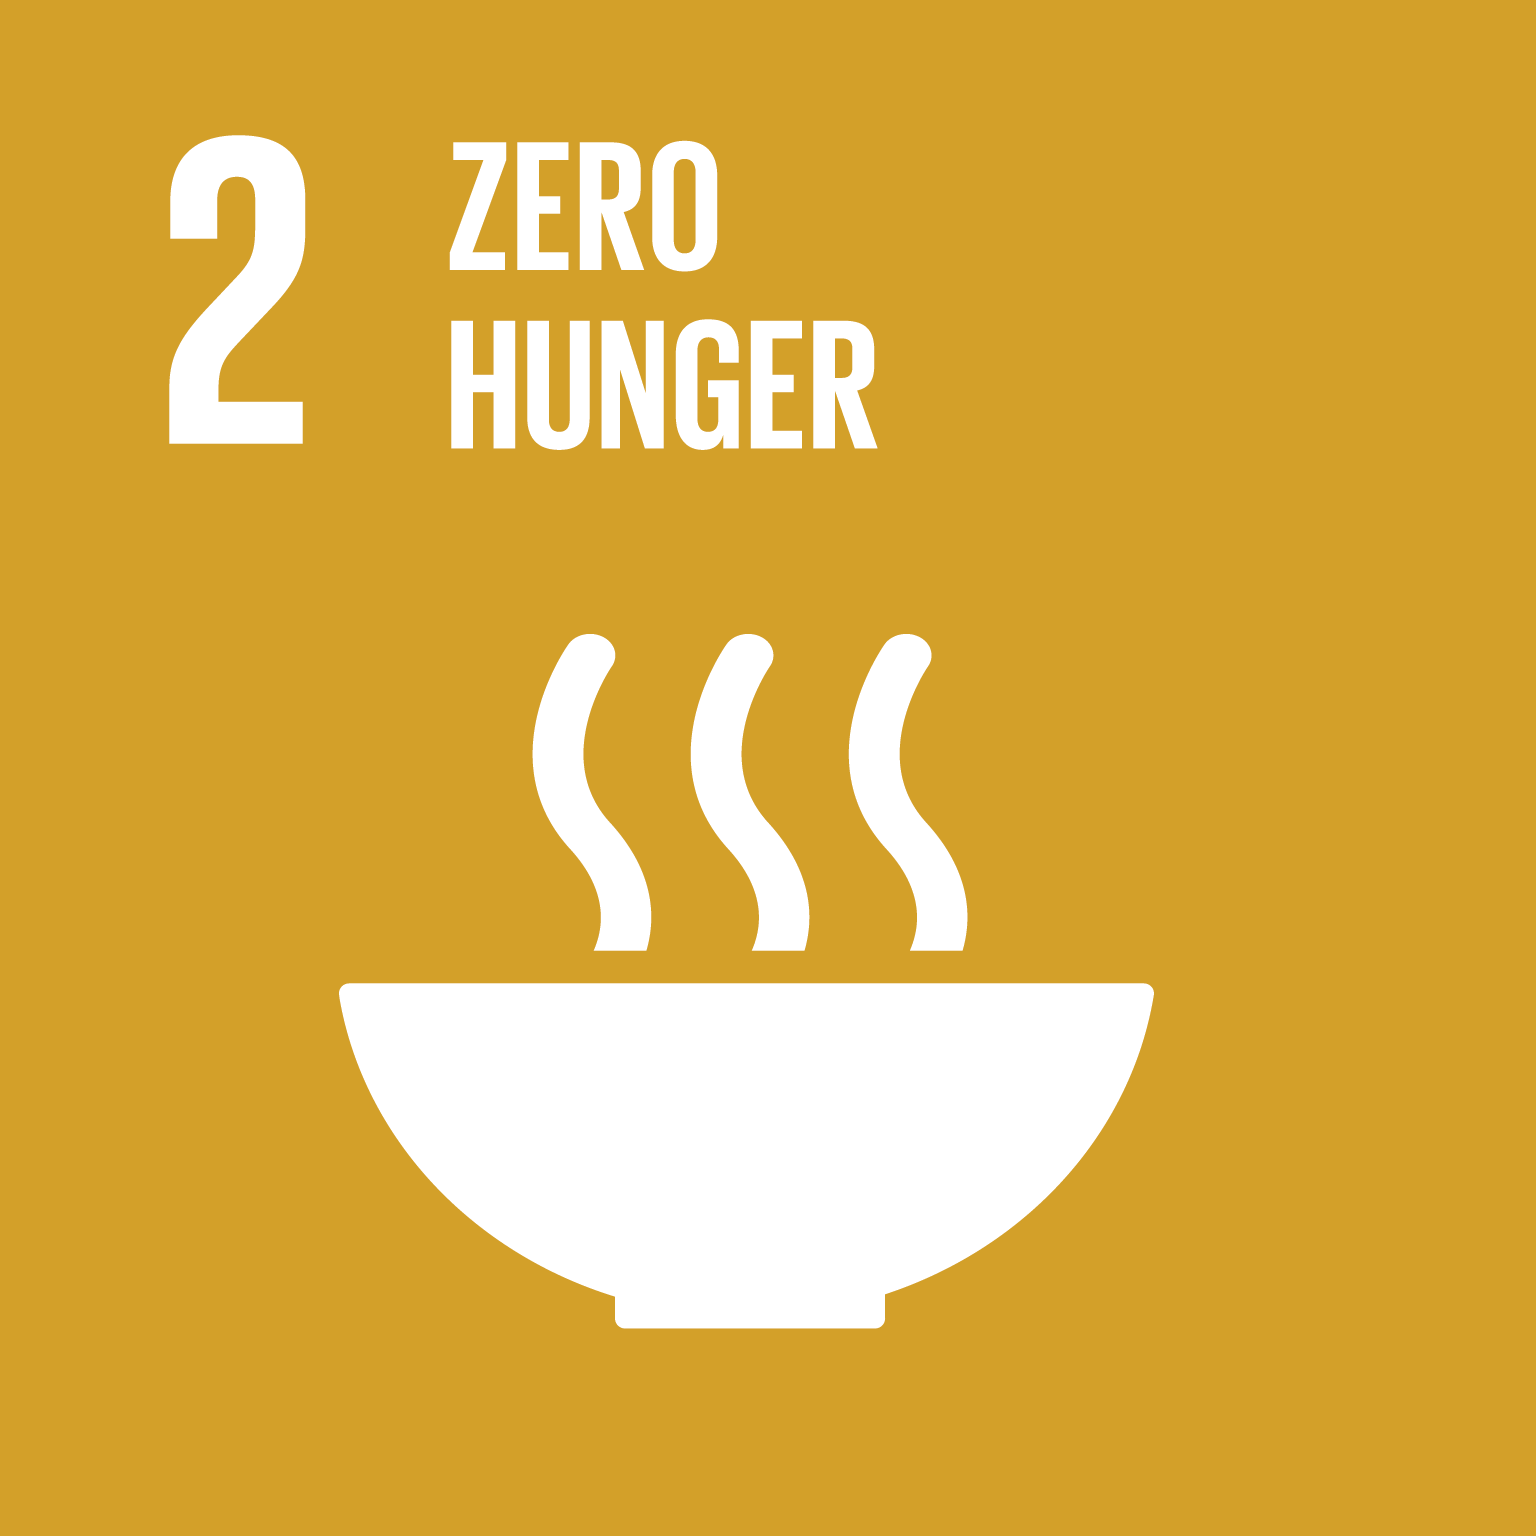 SDG--Sustainable Development Goal 2: Zero Hunger